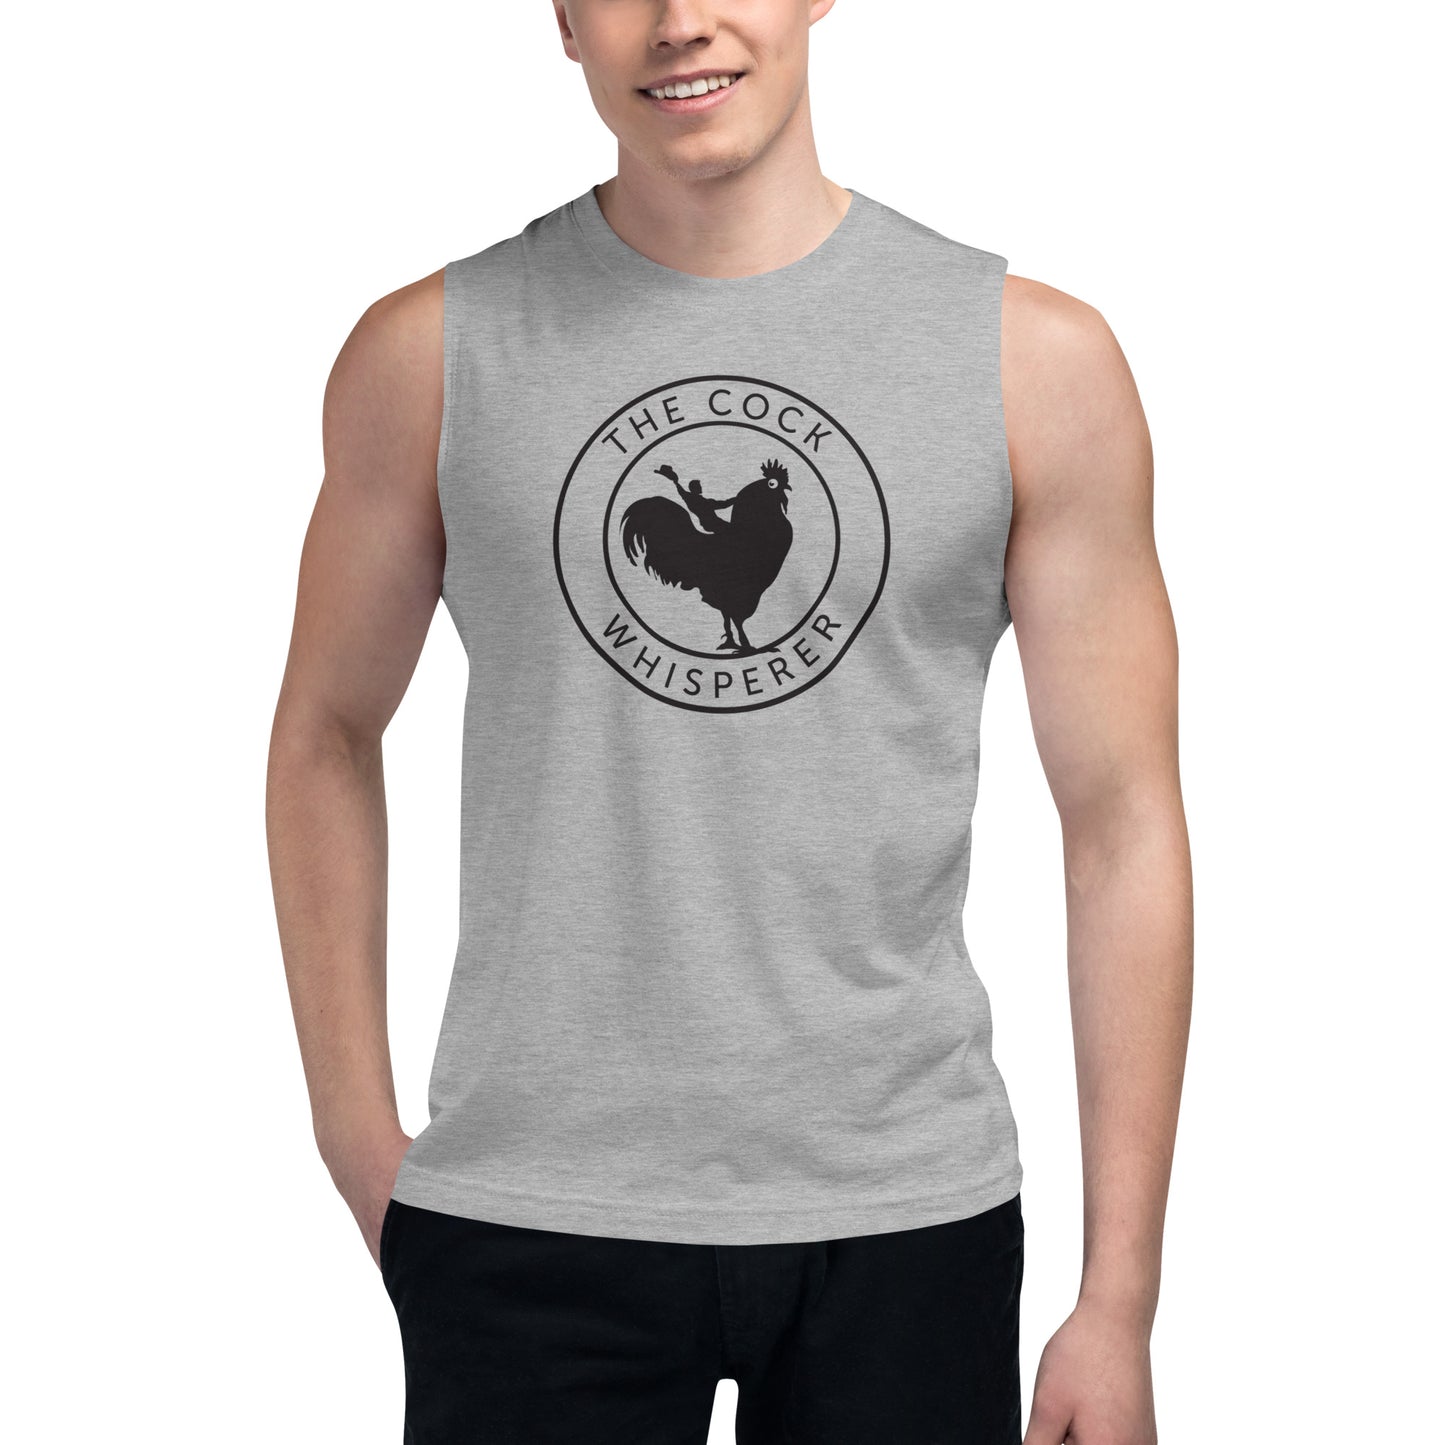 The Cock Whisperer Muscle Shirt (black logo)